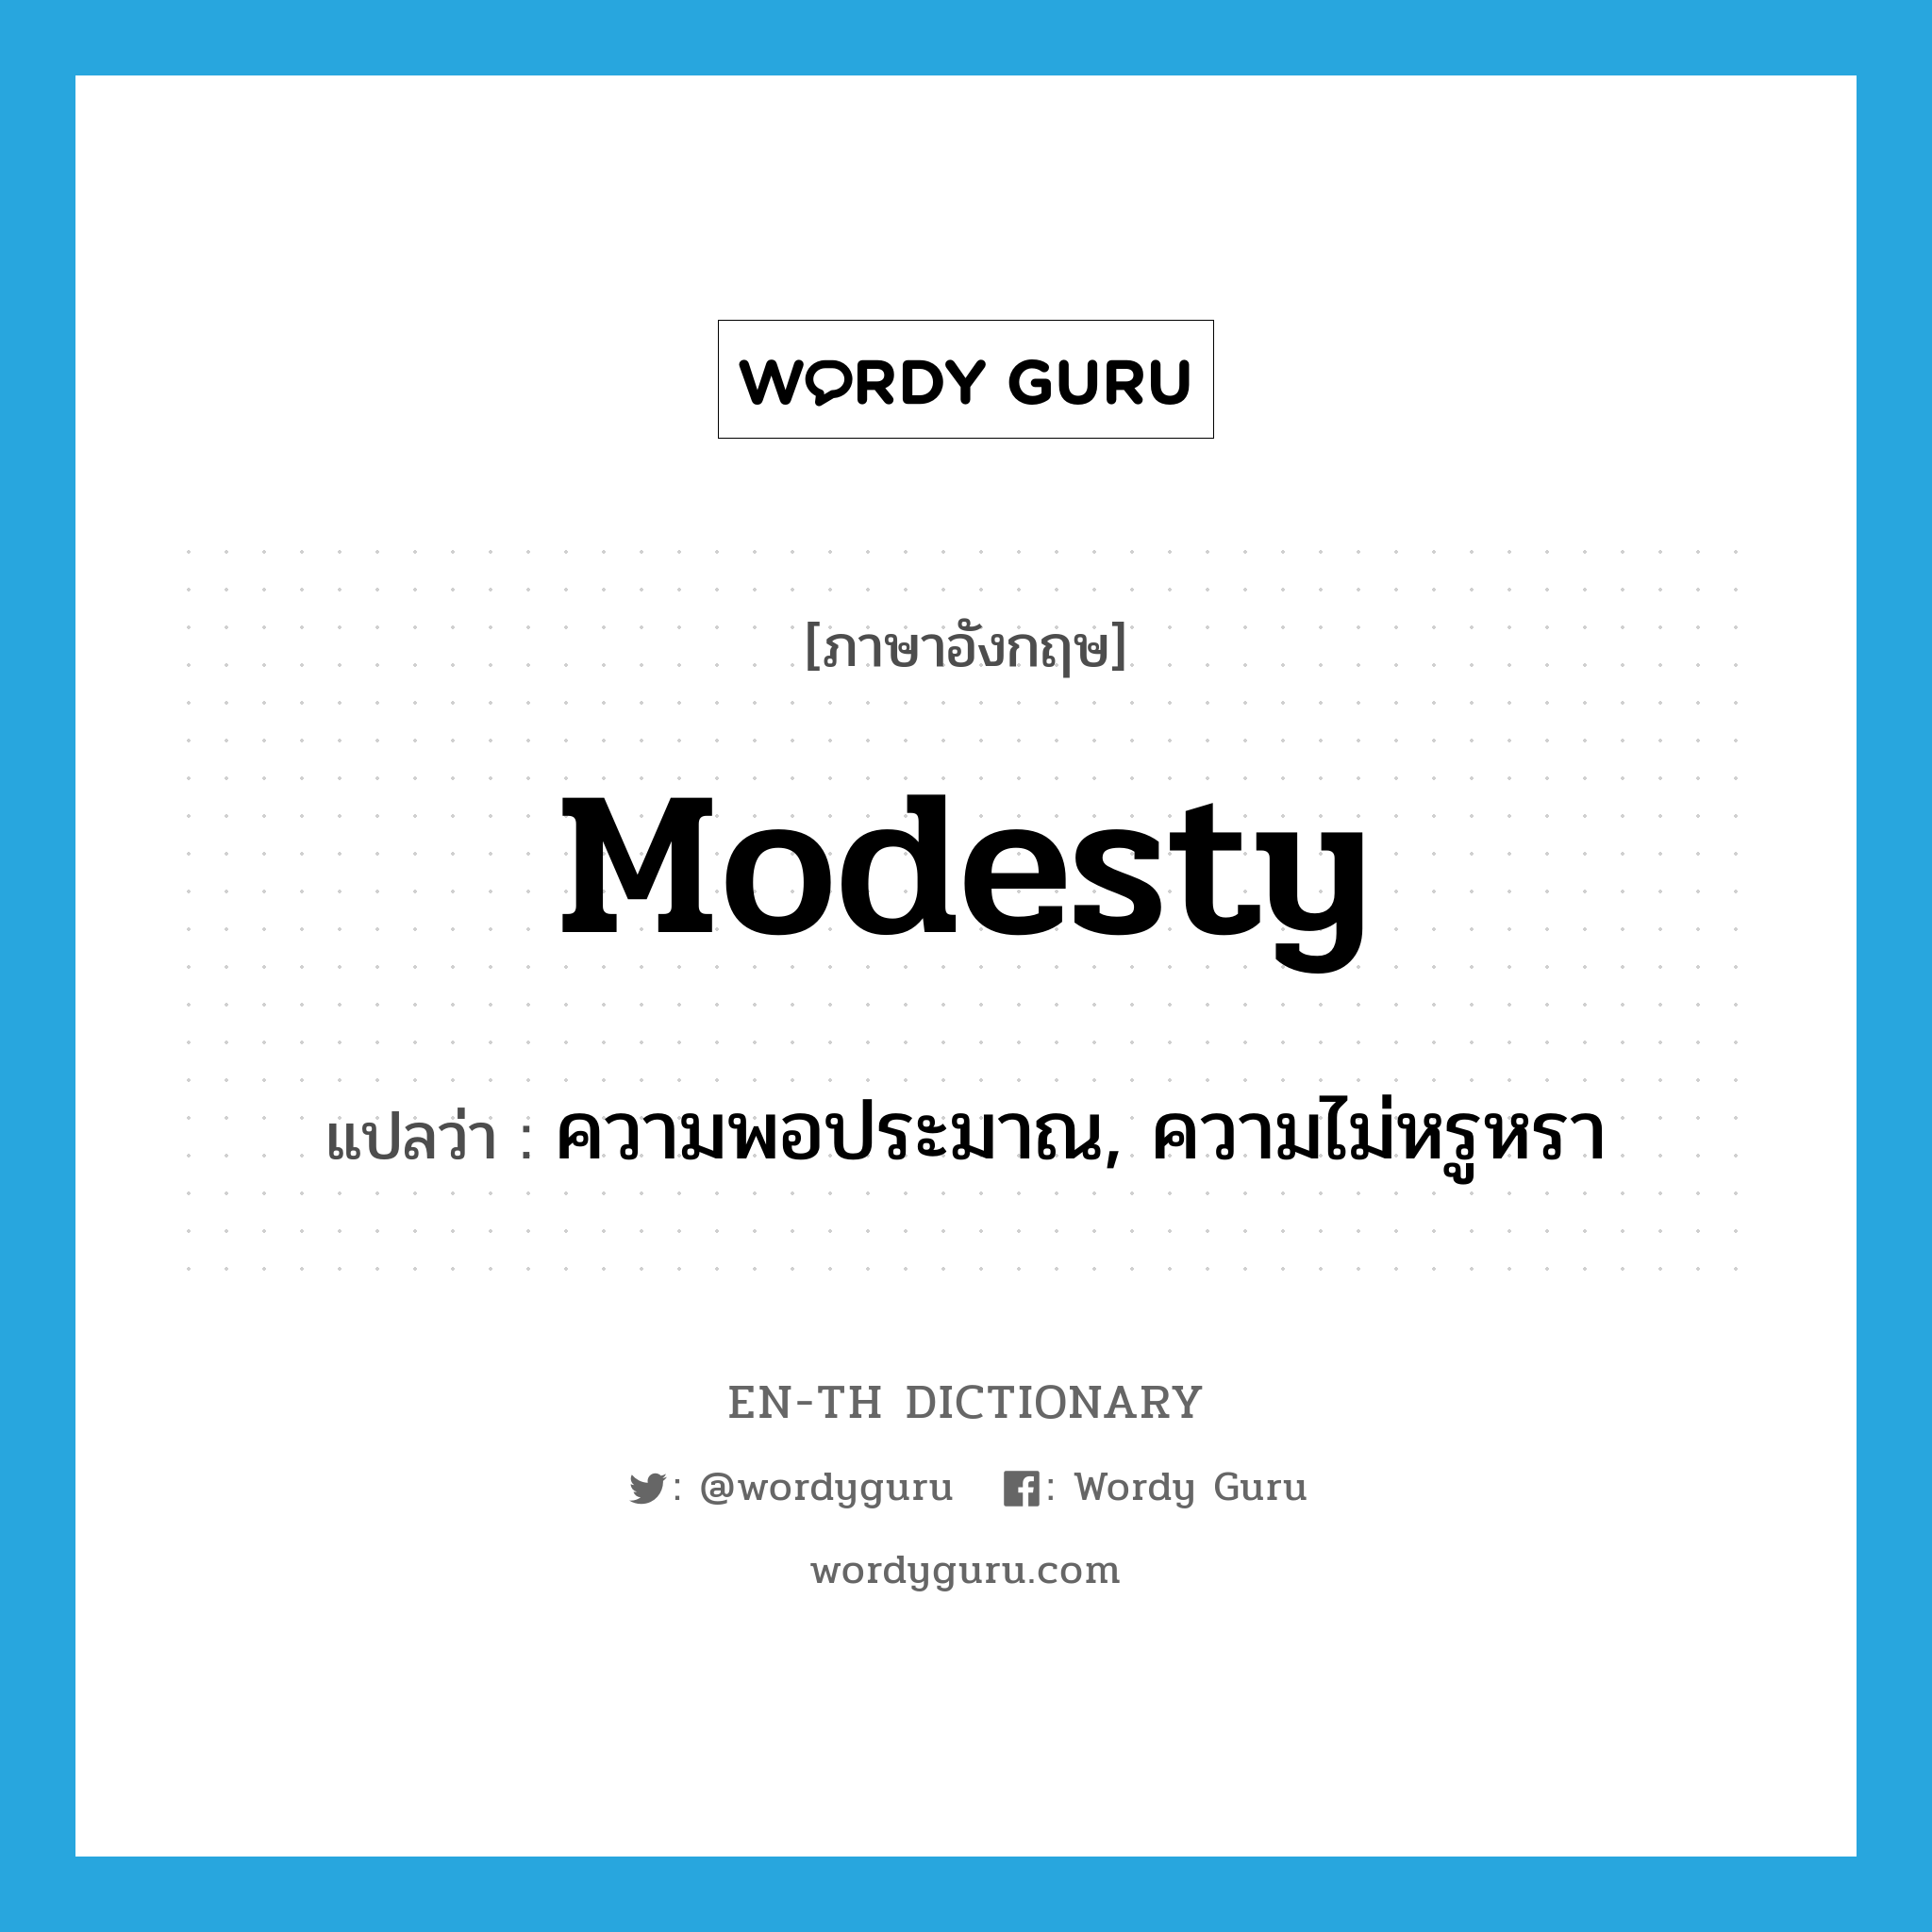 ความพอประมาณ, ความไม่หรูหรา ภาษาอังกฤษ?, คำศัพท์ภาษาอังกฤษ ความพอประมาณ, ความไม่หรูหรา แปลว่า modesty ประเภท N หมวด N